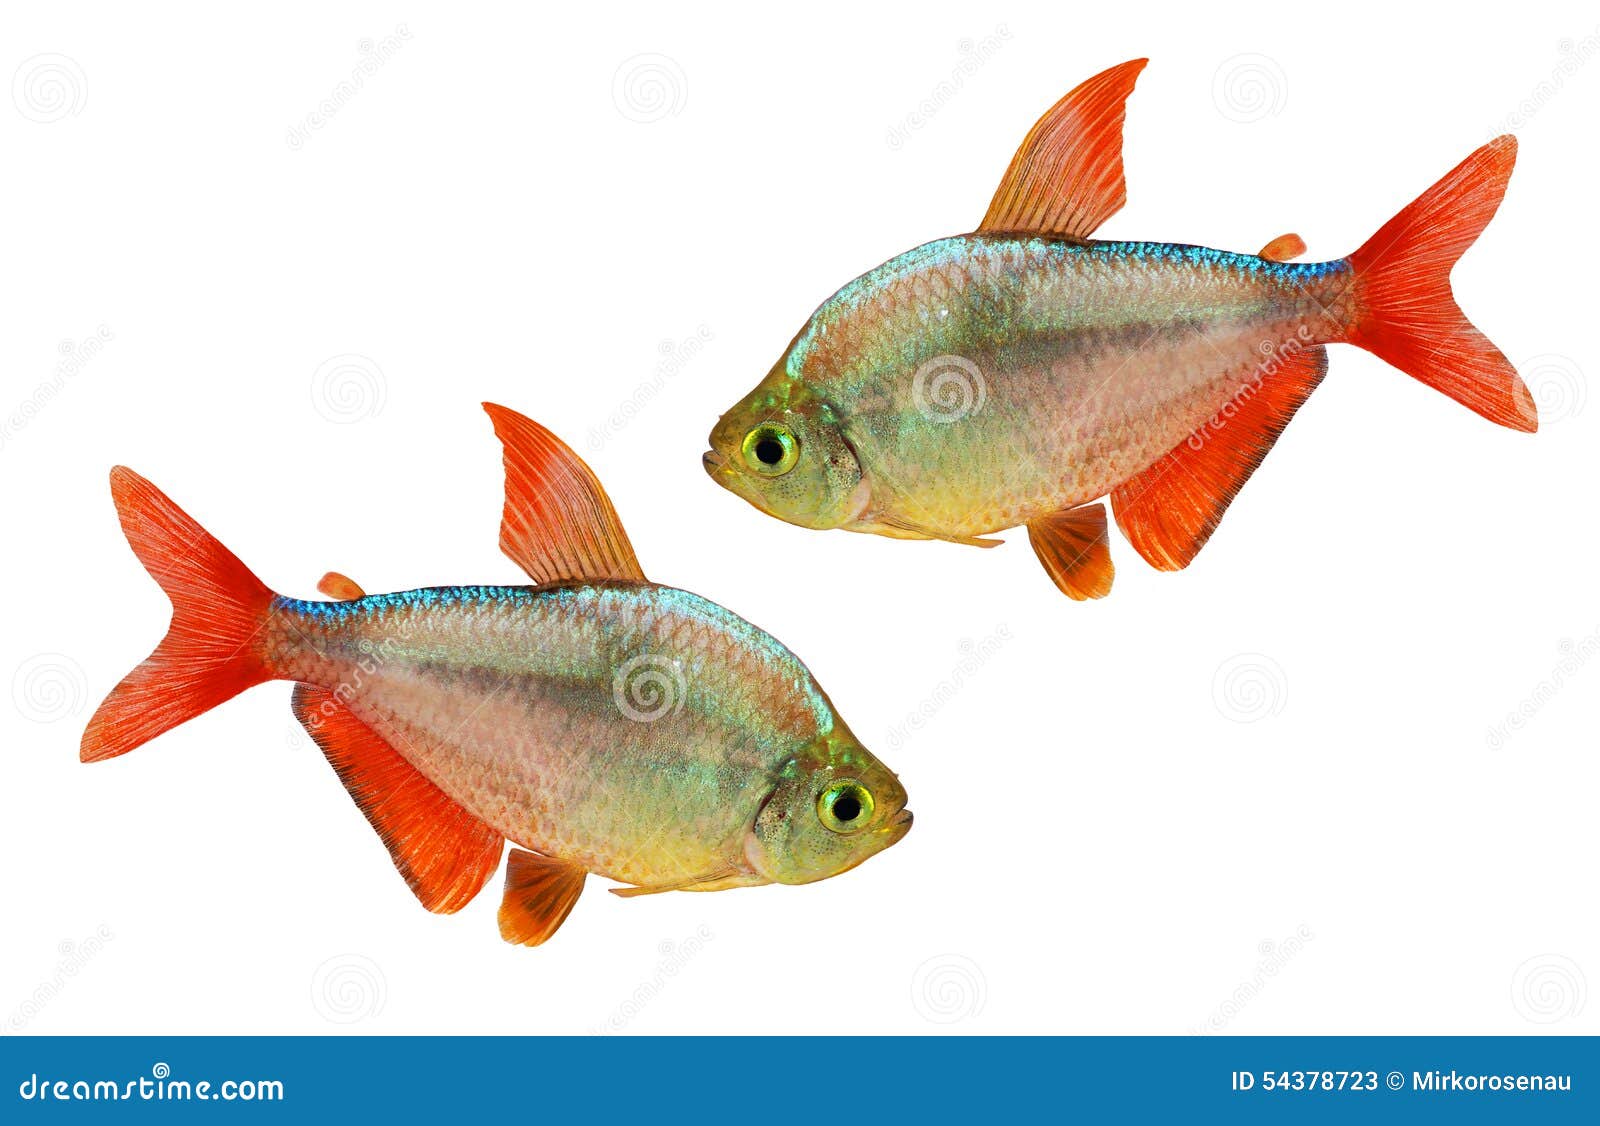 red-blue columbian tetra hyphessobrycon columbianus aquarium fish 